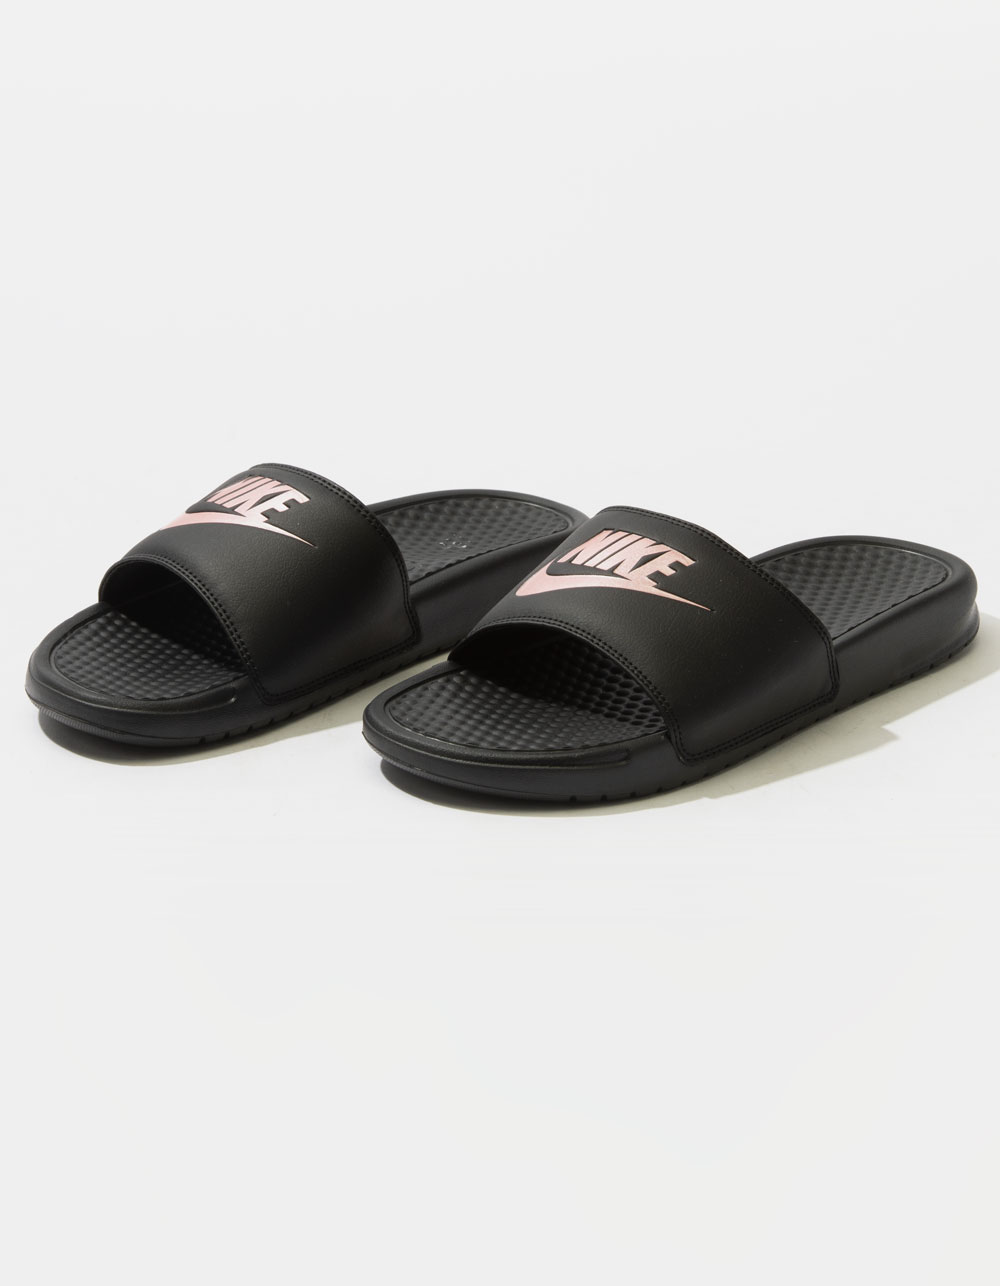 Womens Slide Sandals - BLACK COMBO Tillys